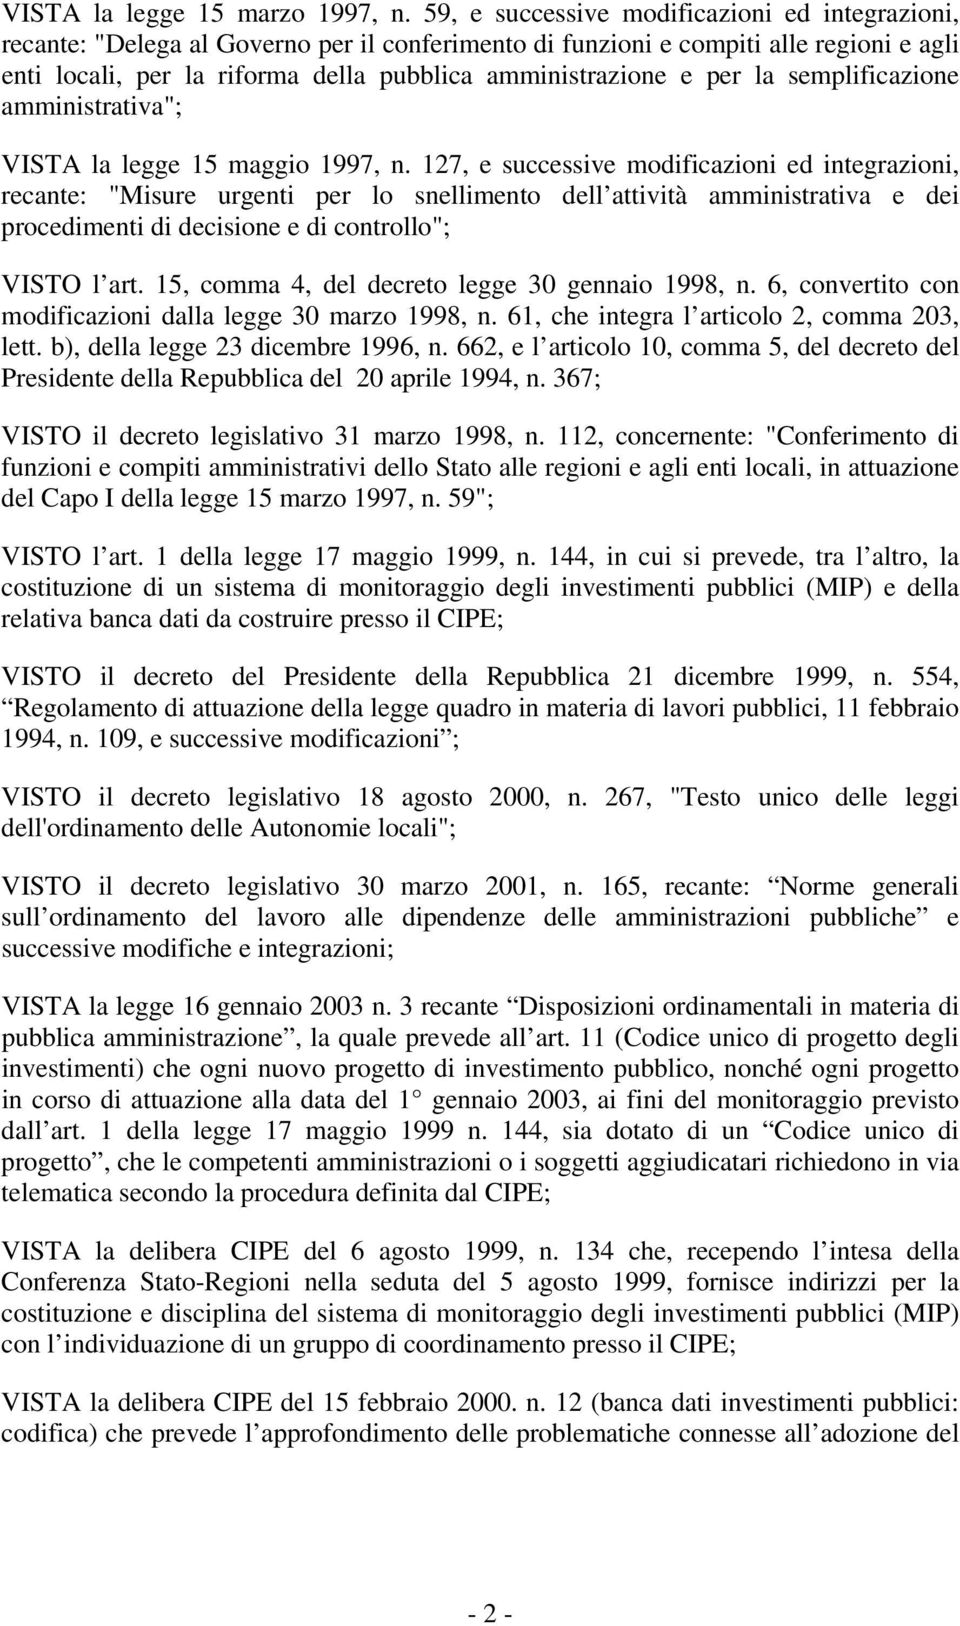 per la semplificazione amministrativa"; VISTA la legge 15 maggio 1997, n.